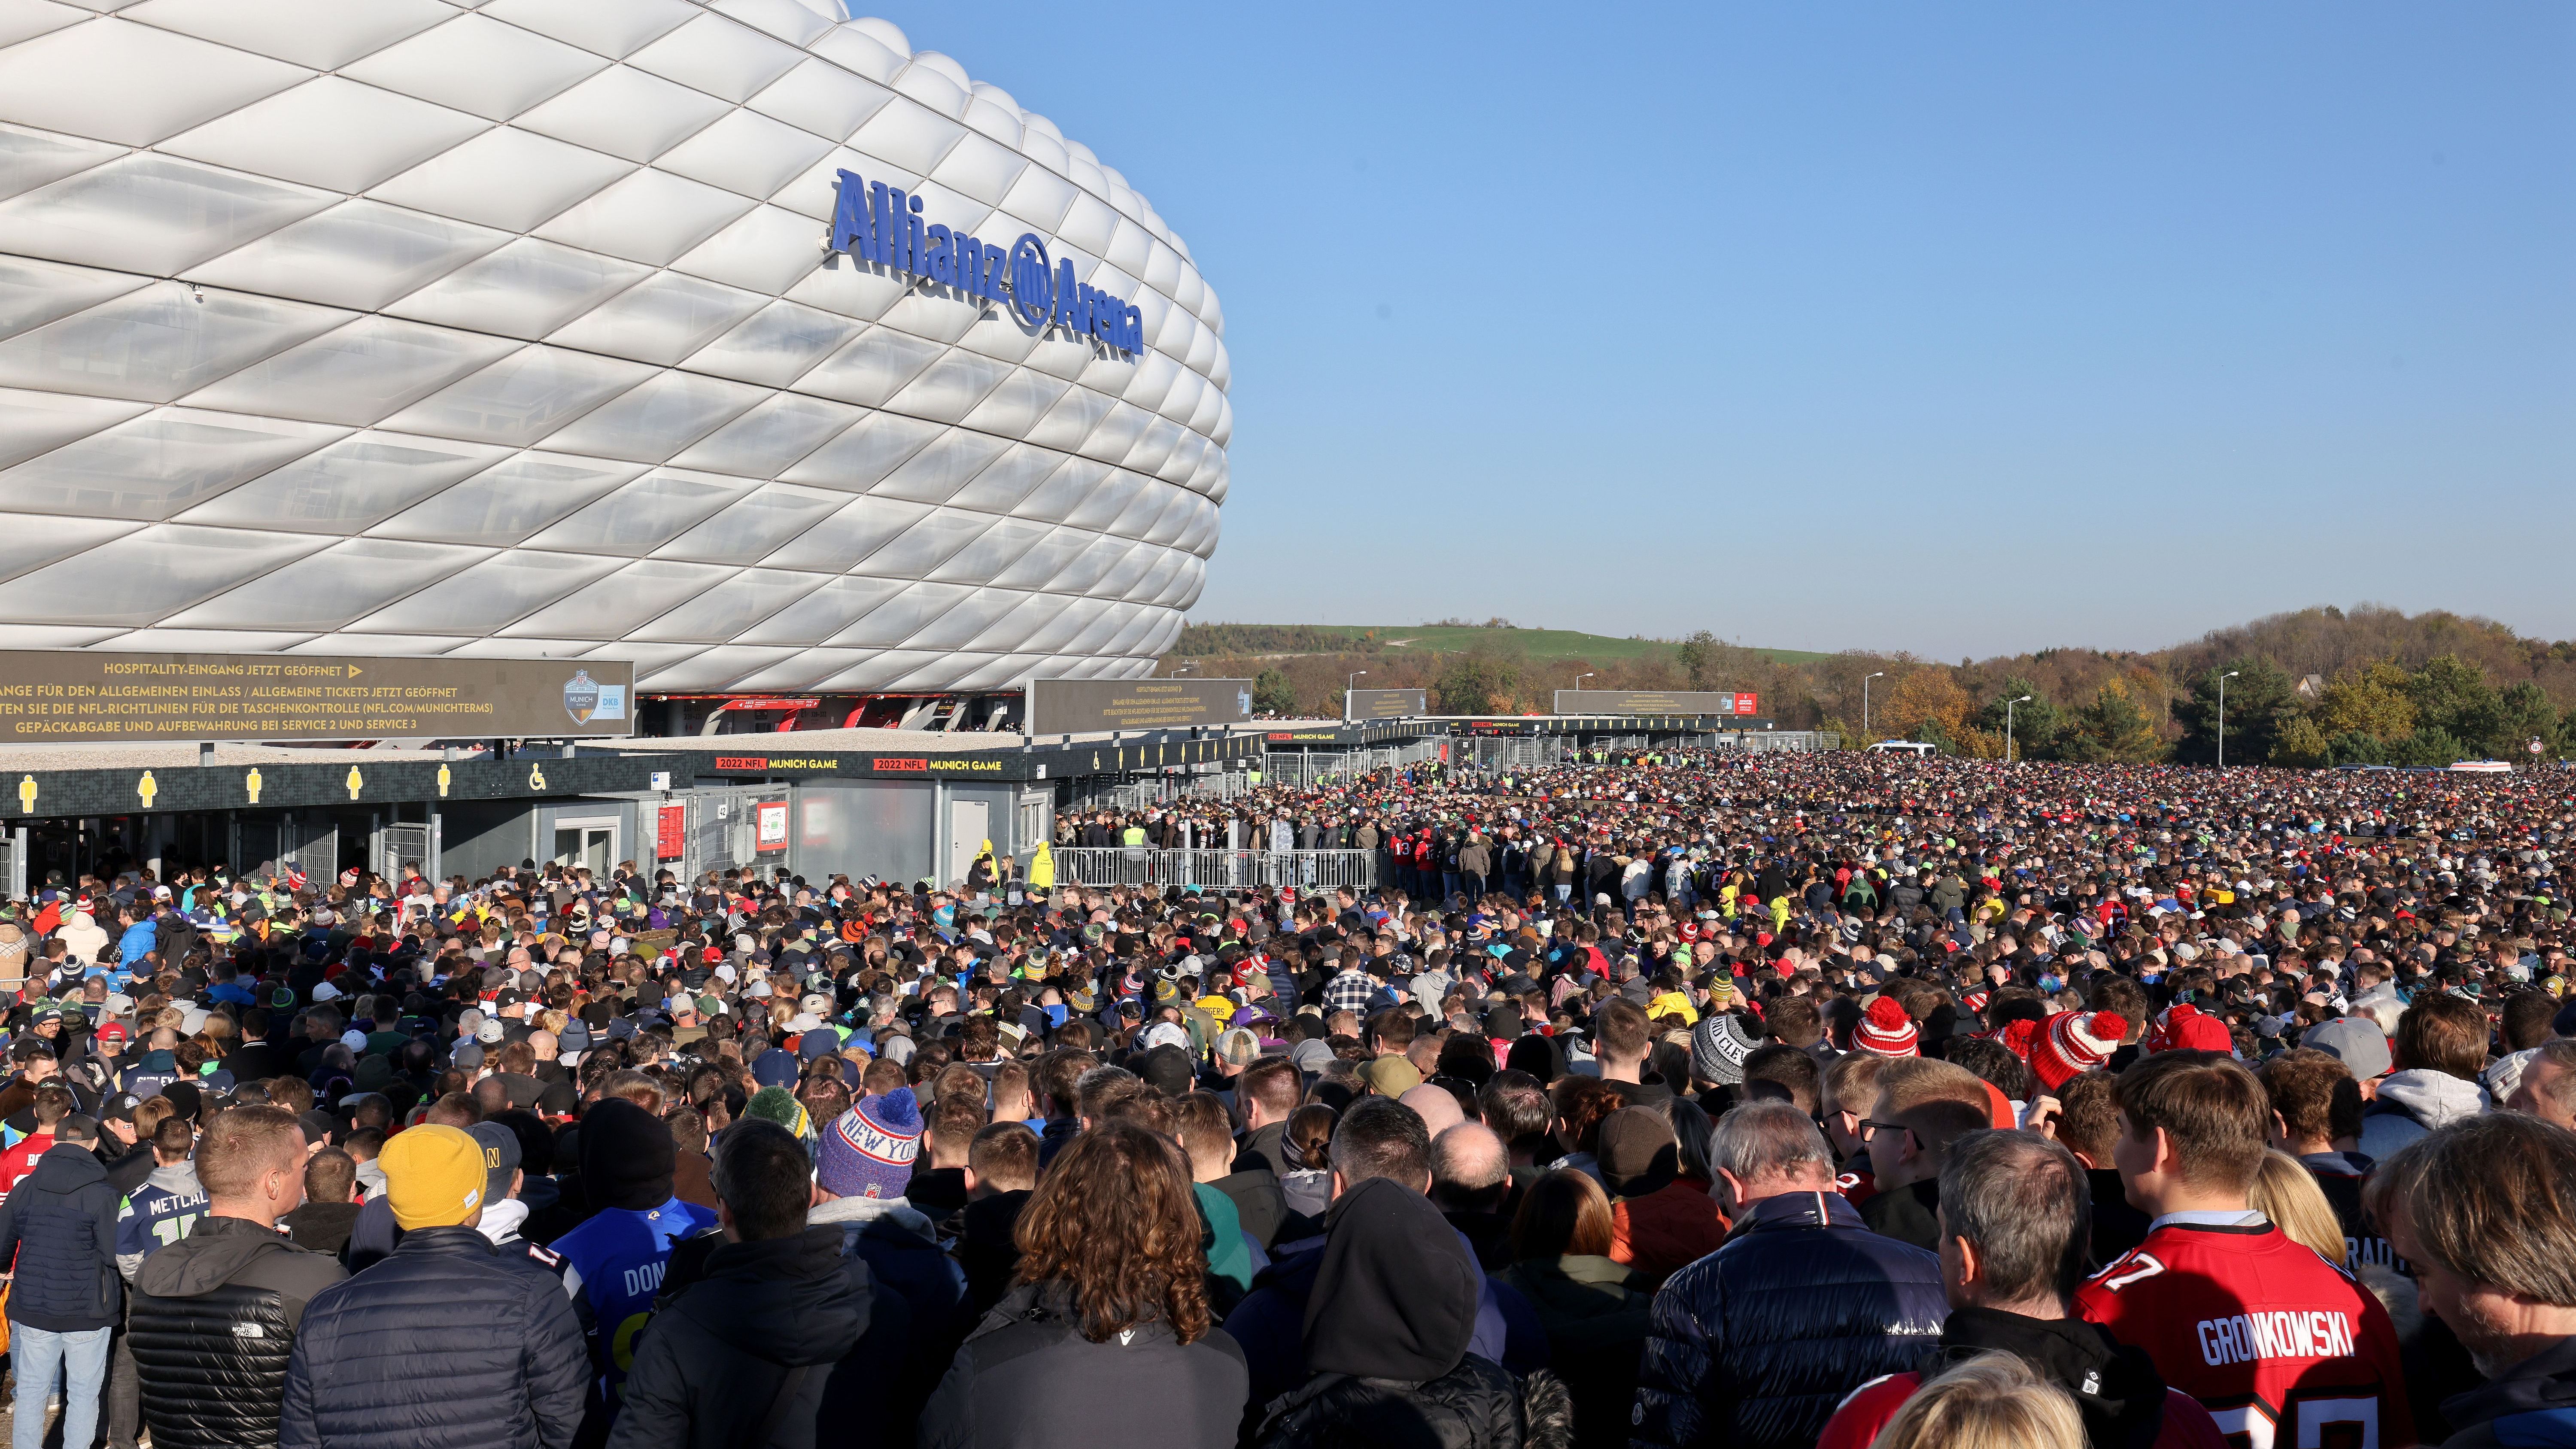 <strong>Einlass in München</strong><br>Der Einlass in München erfolgte erst um 13 Uhr (ursprünglich war sogar 13:30 Uhr geplant). Da sich schon um 10 Uhr Zehntausende Fans vor dem Stadion versammelten, war das Chaos, als die Tore endlich aufgingen, unausweichlich: lange Warteschlangen, Gedränge, Stillstand, Ärger.